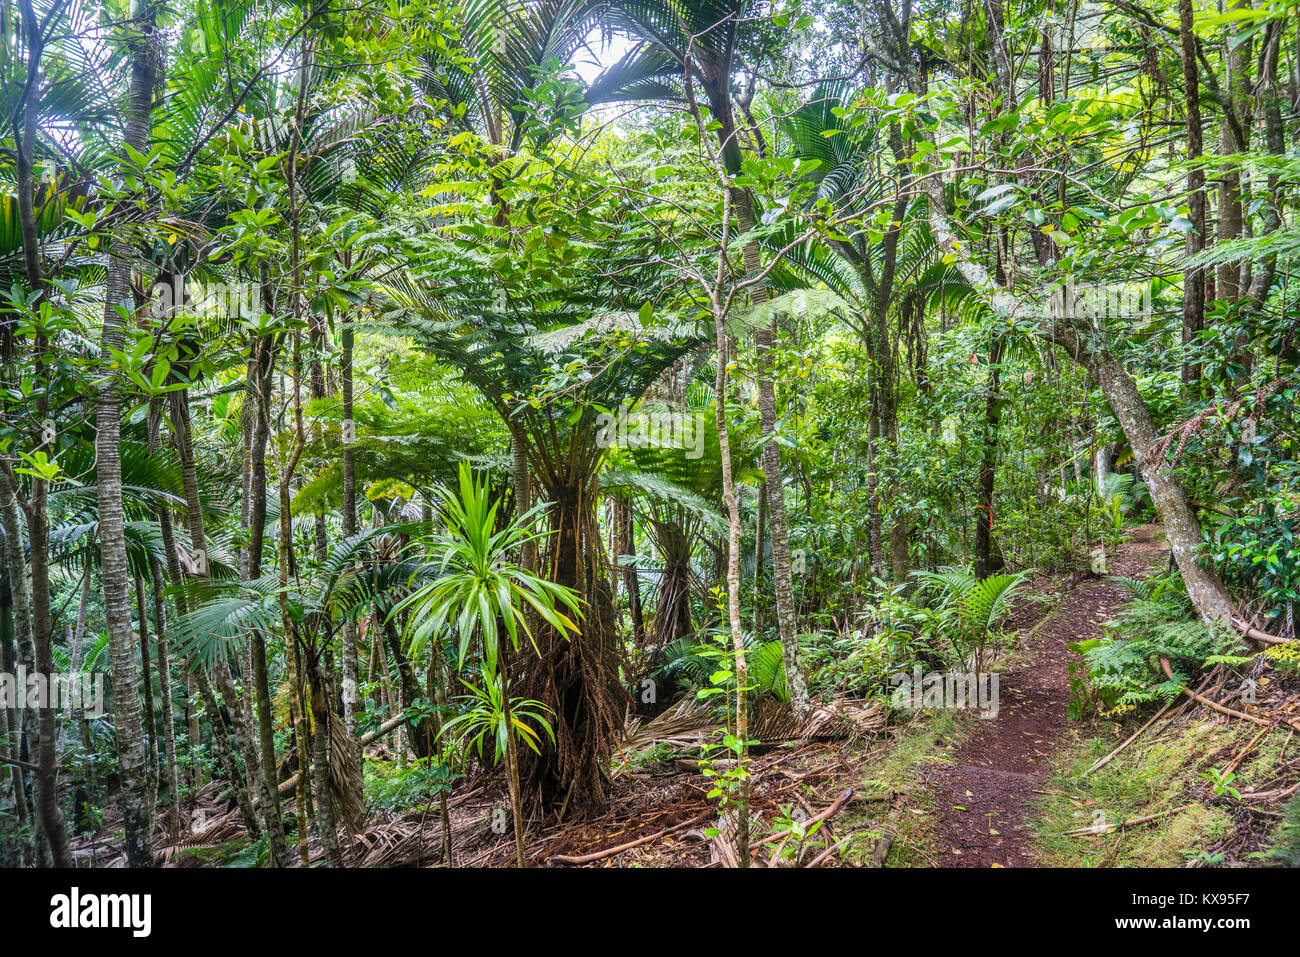 L'île de Norfolk, territoire extérieur australien, Norfolk Island National Park, la végétation luxuriante forêt tropicale avec des fougères arborescentes et Norfolk Island Palms at th Banque D'Images